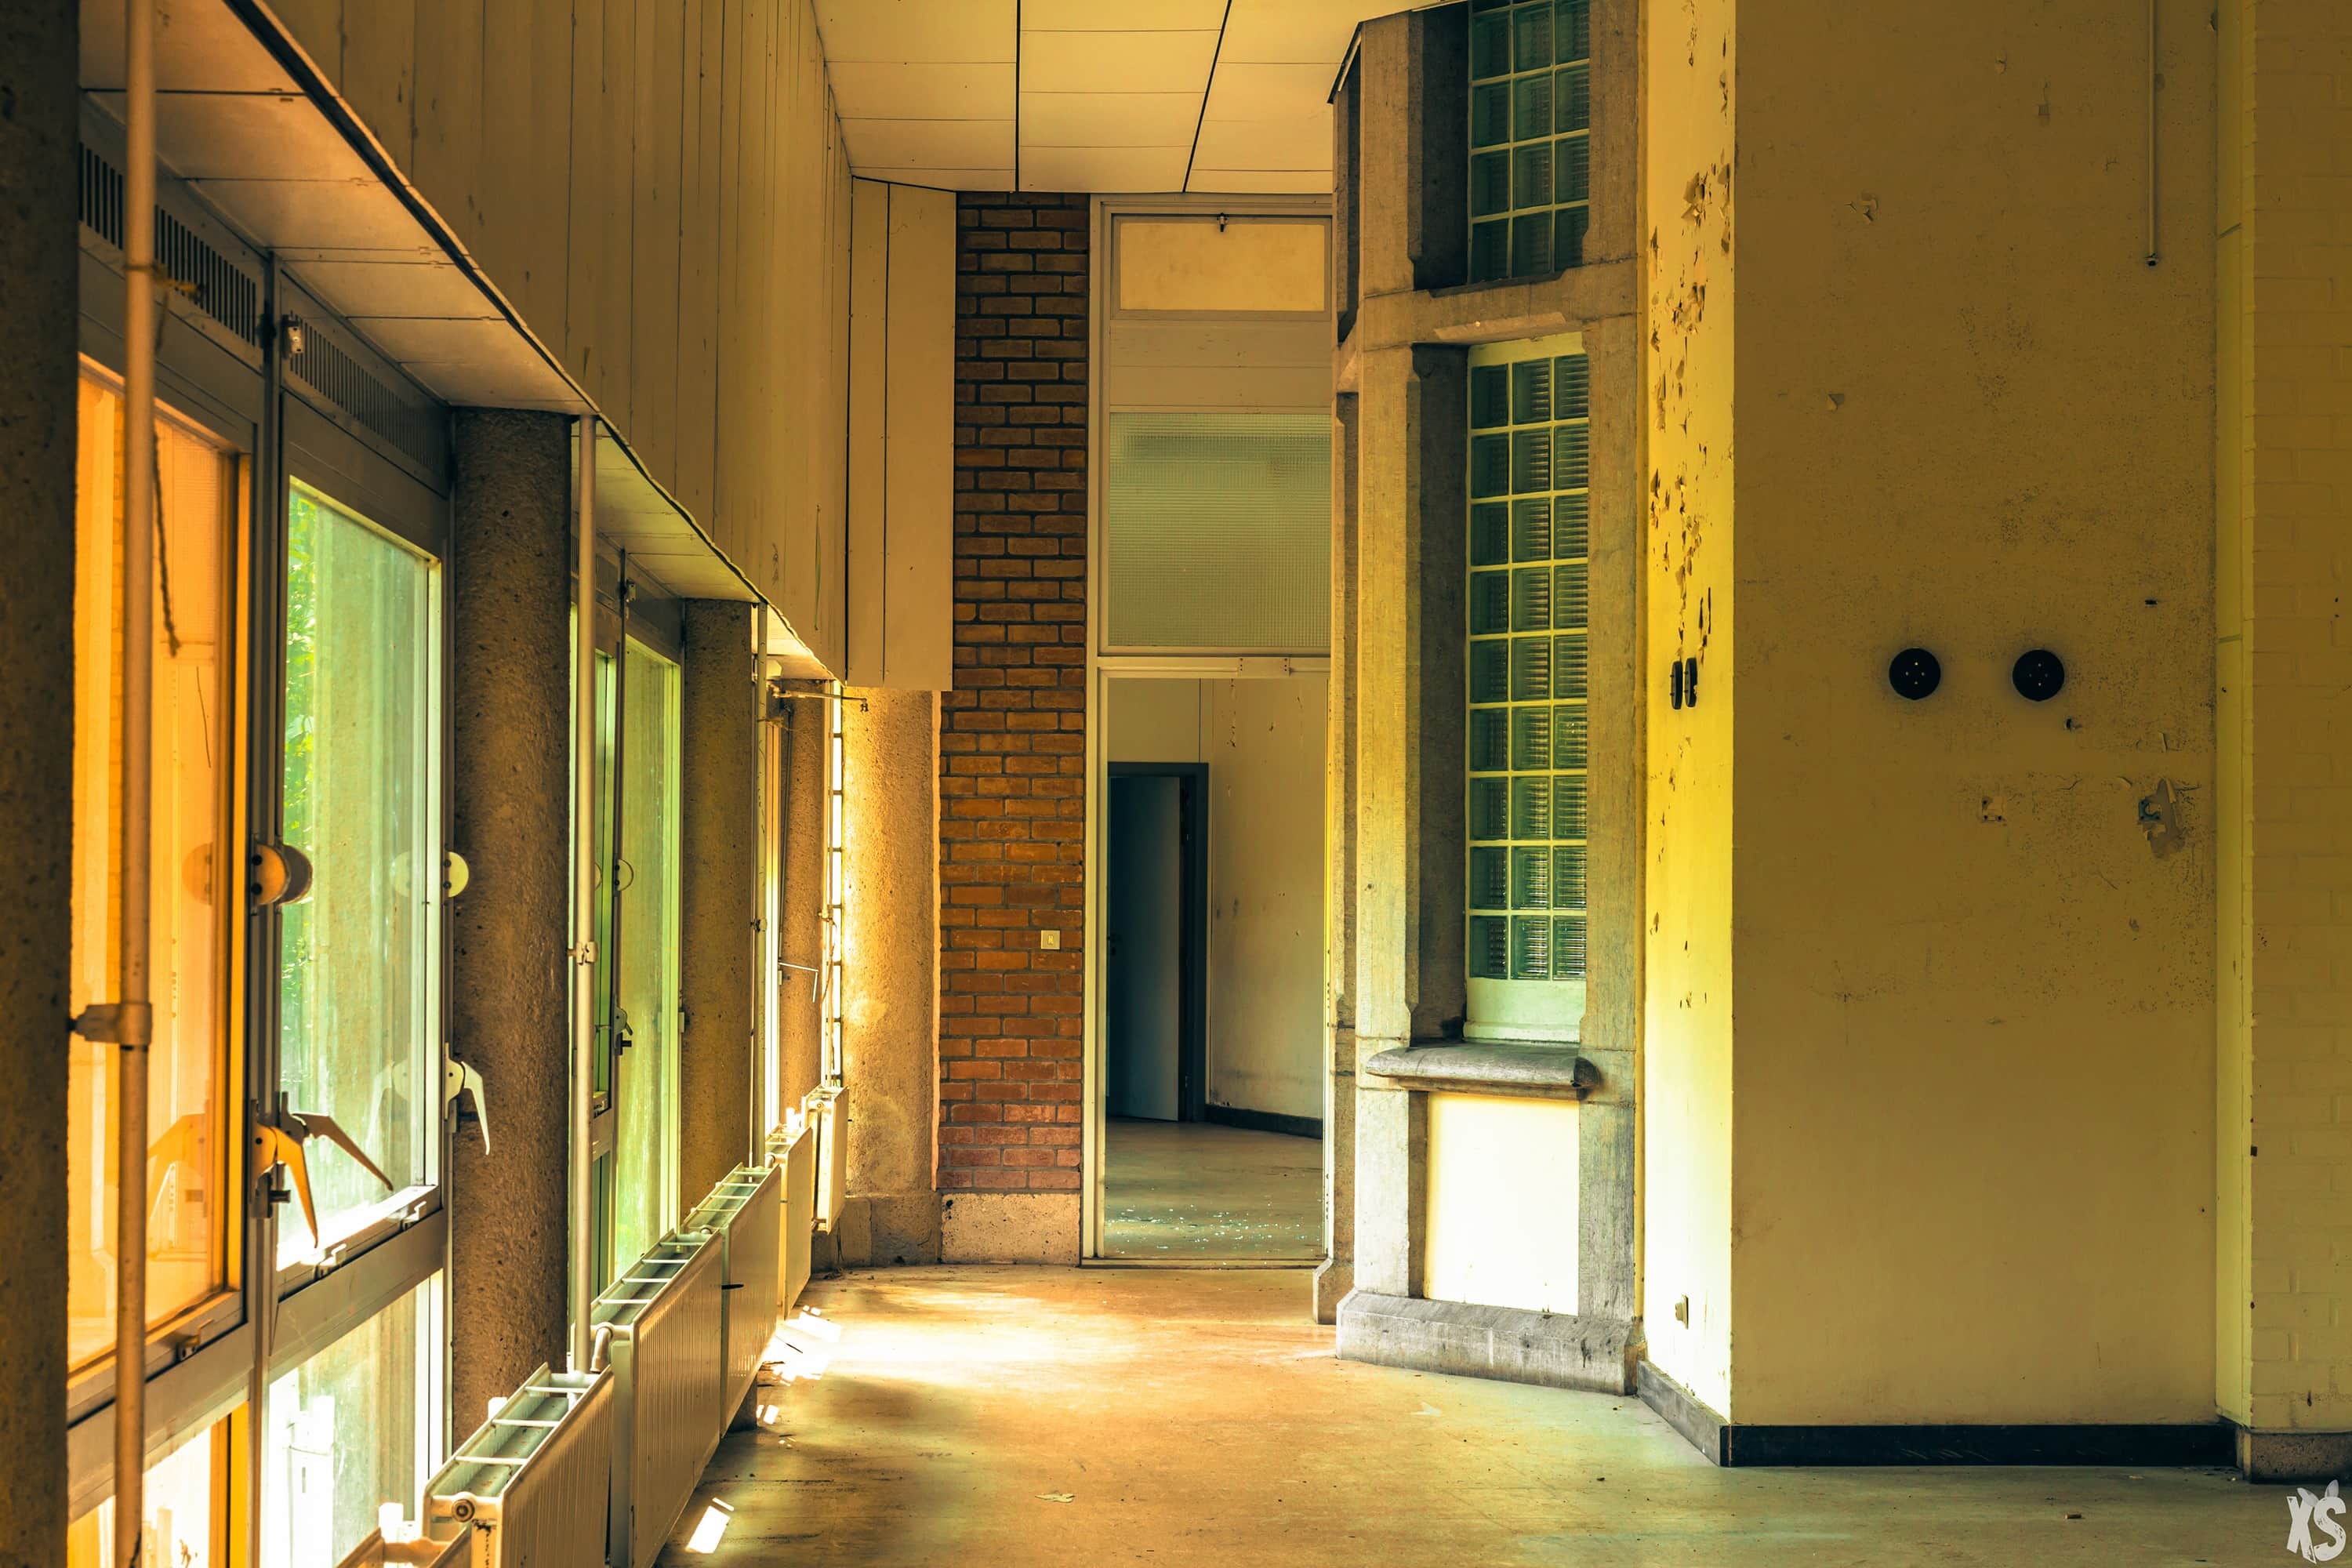 Sanatorium abandonné situé en Belgique - Urbex